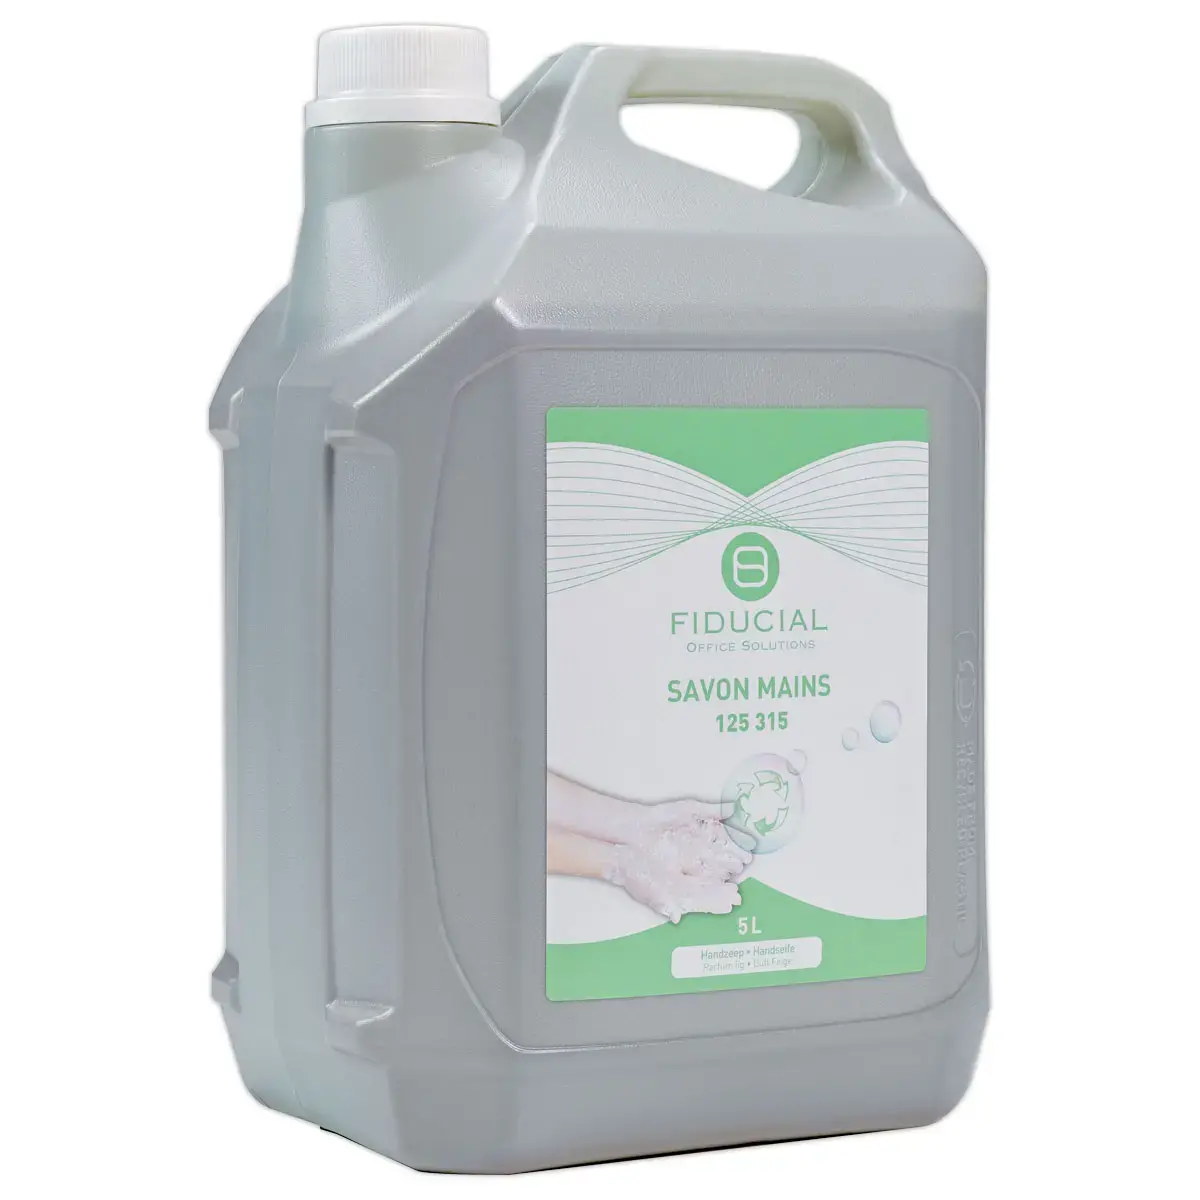 Bidon de gel nettoyant pour les mains - Parfum Figue - 5L - FIDUCIAL OFFICE SOLUTIONS photo du produit